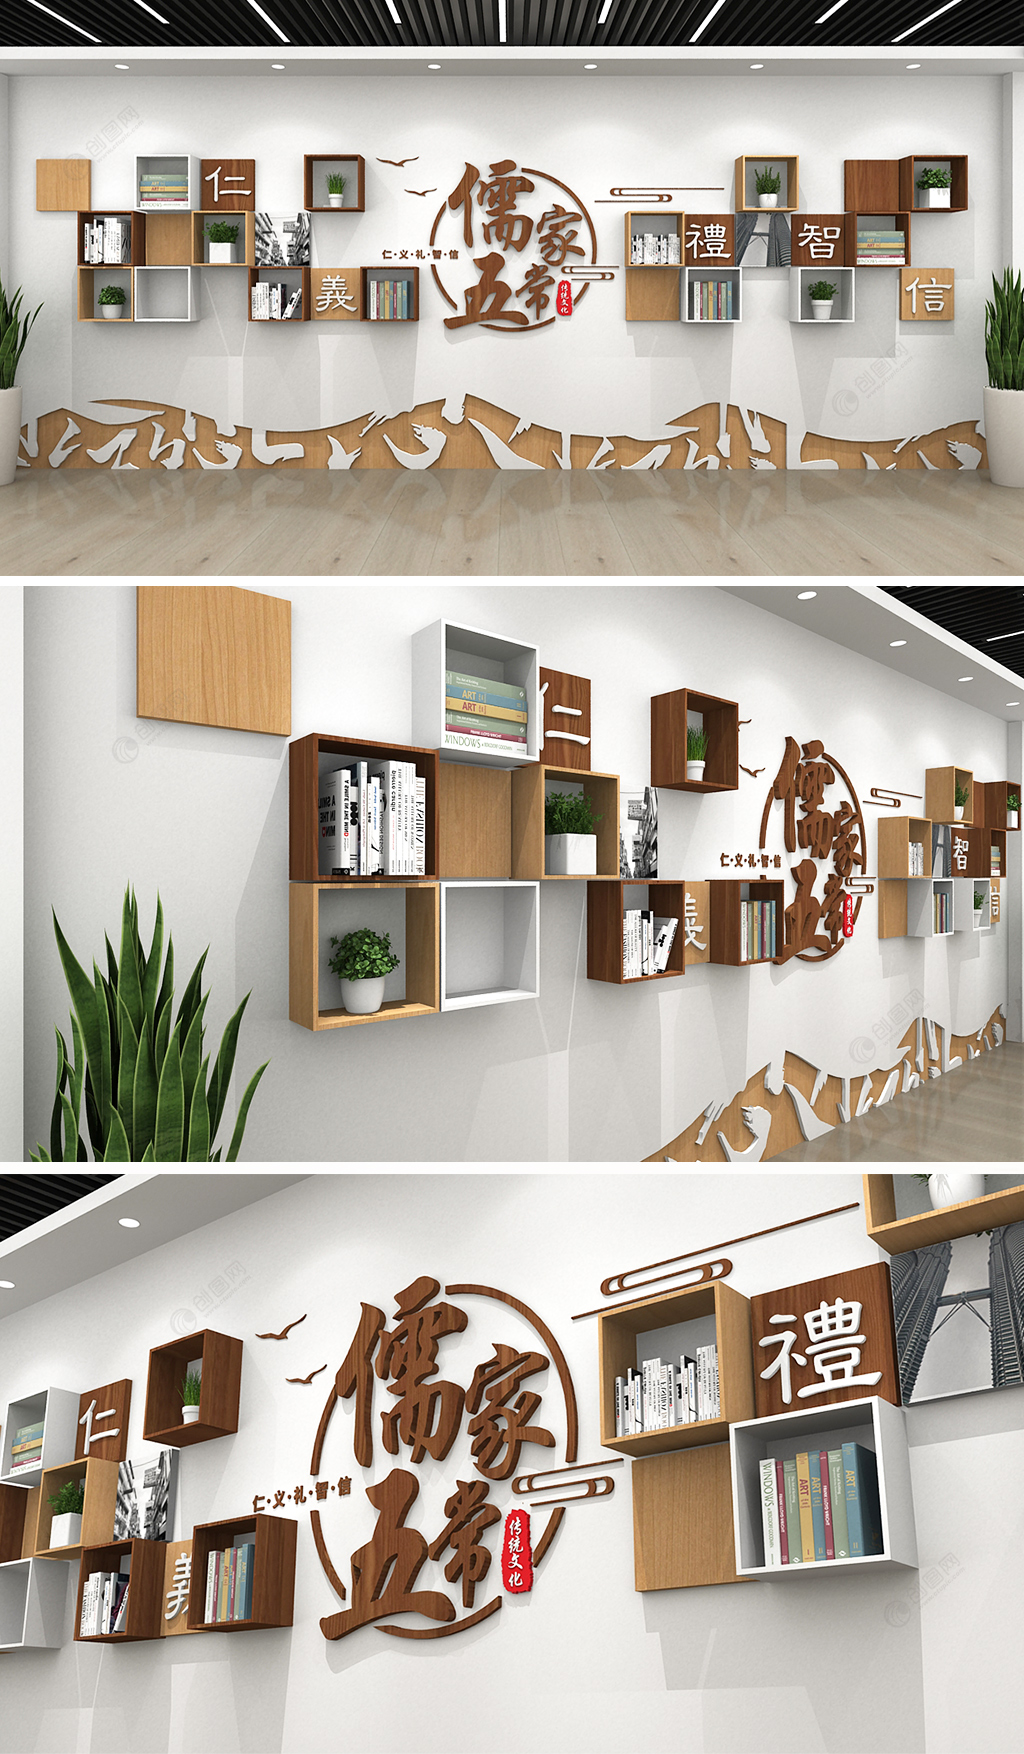 中式木纹图书室班级教室儒家五常中华传统文化墙设计